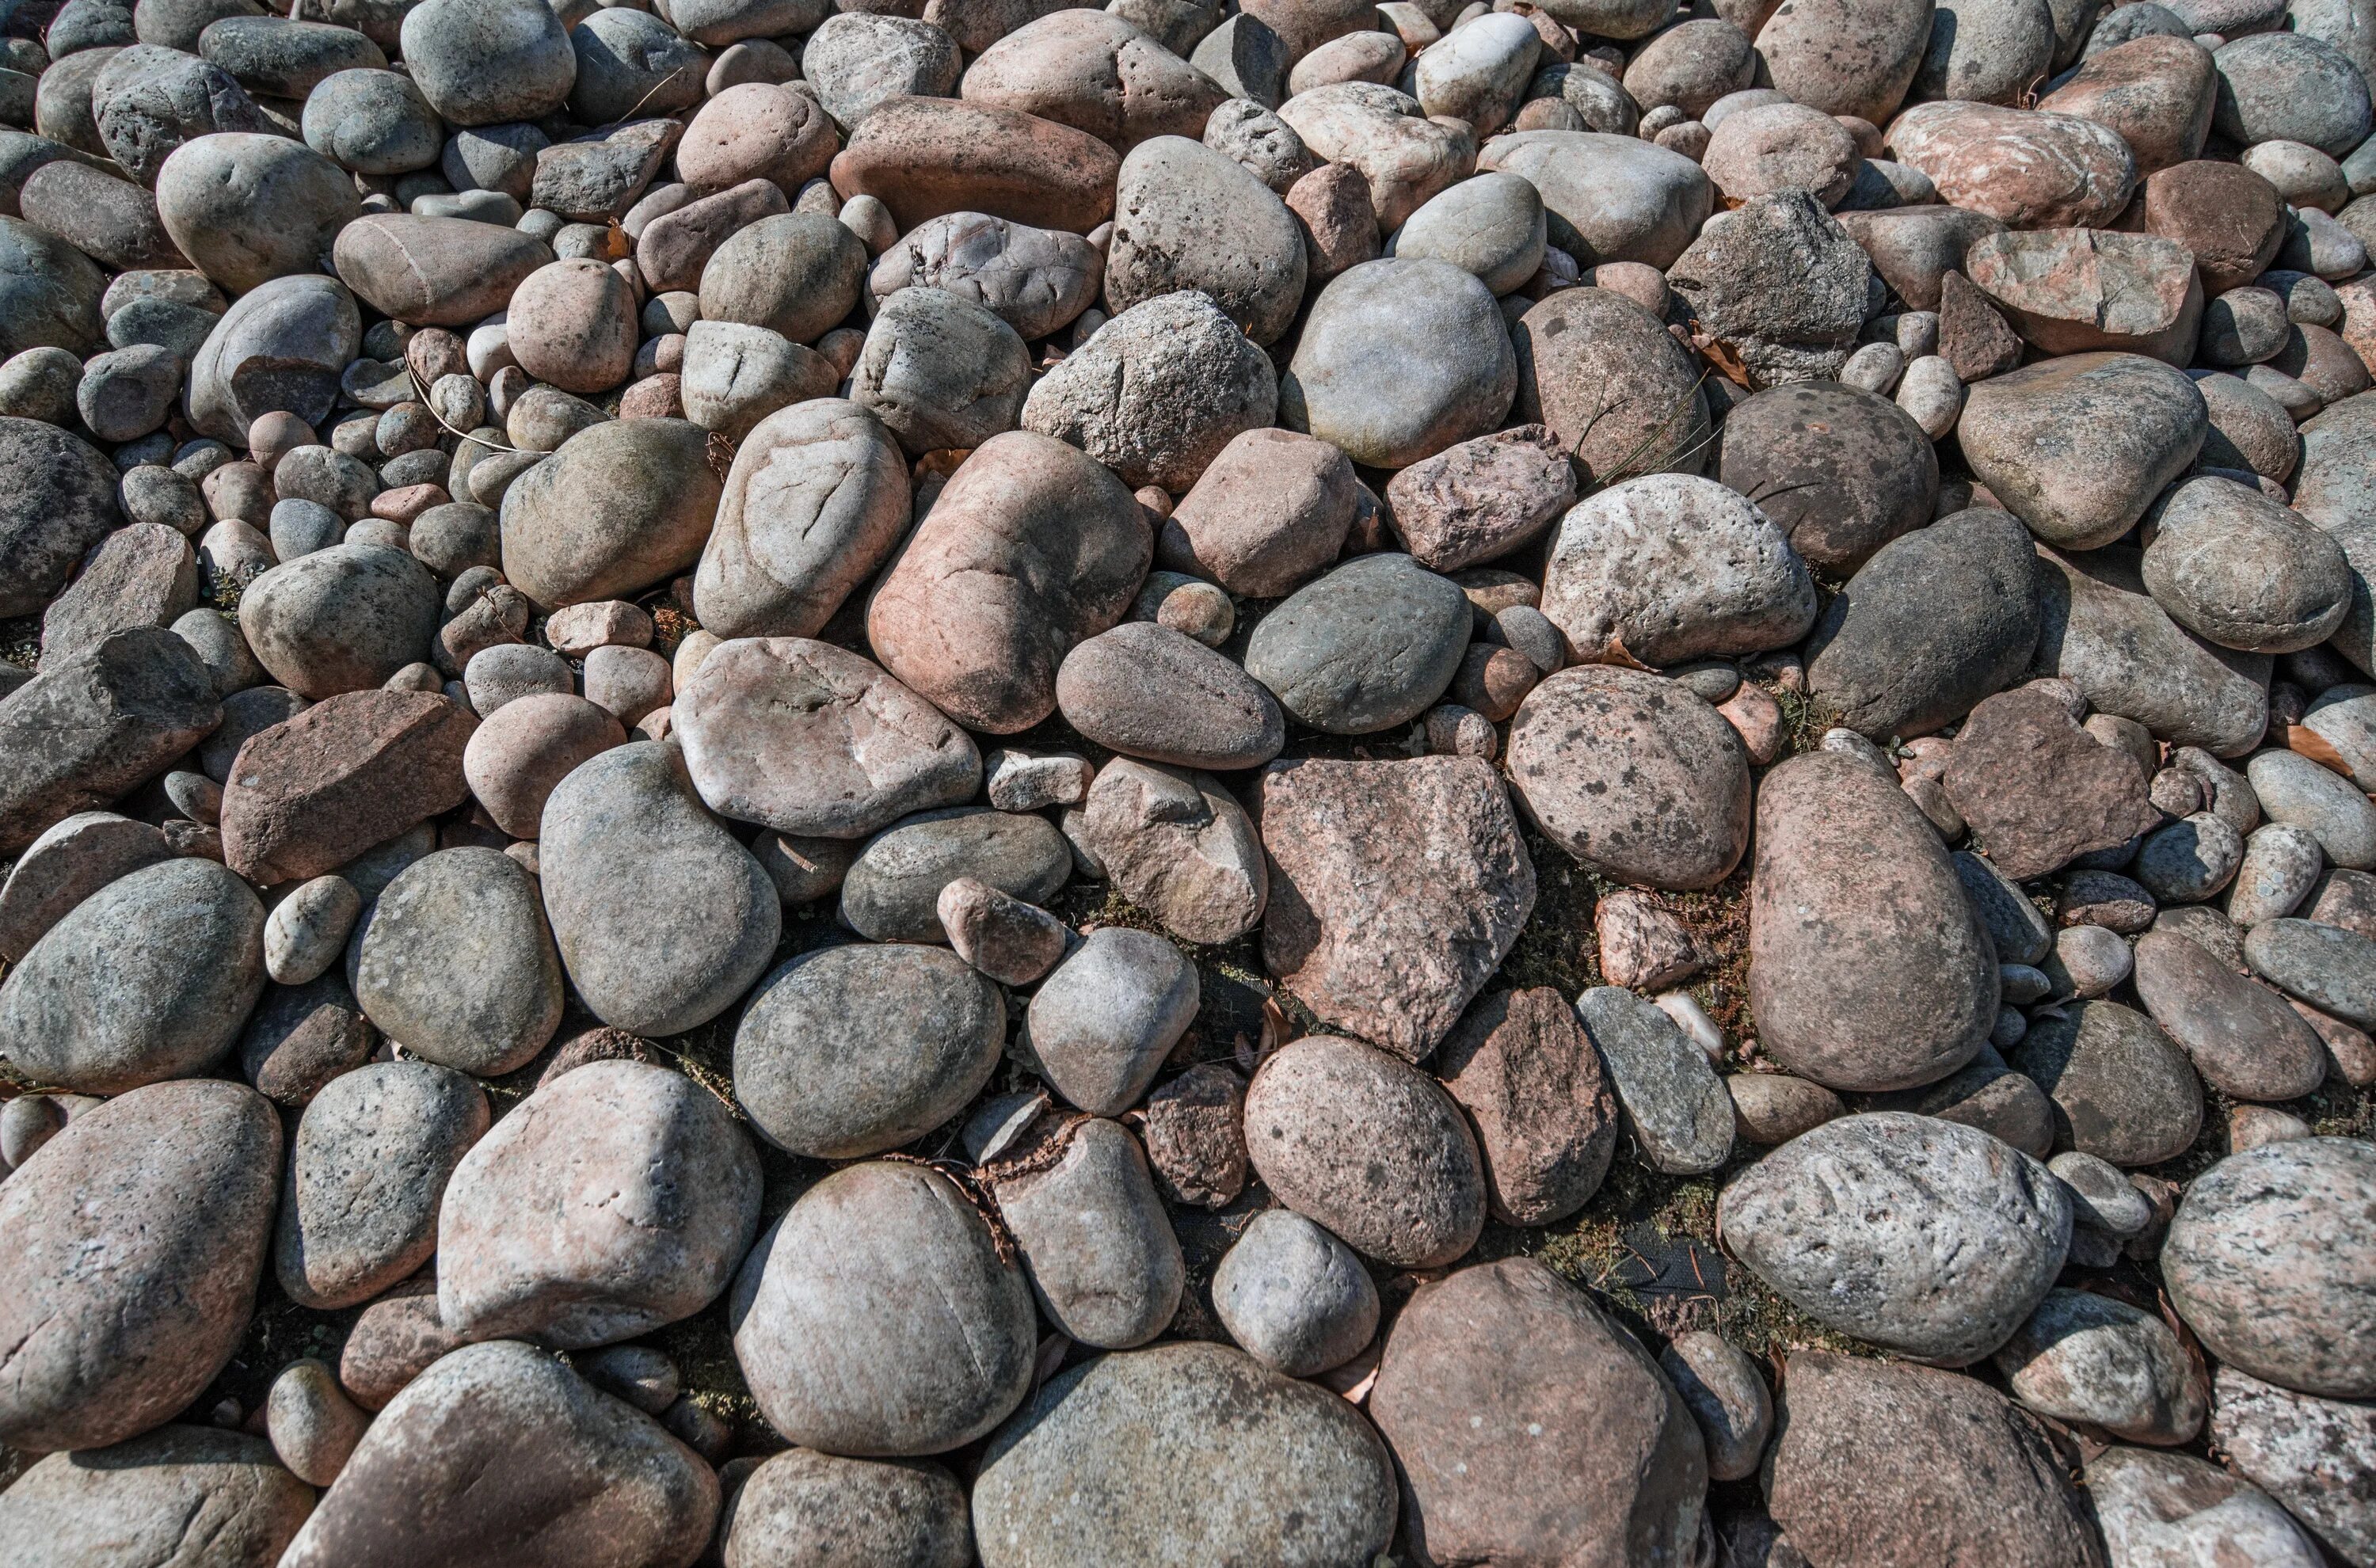 Stone vs. Галечник порода. Крупный галечный камень. Галька Горная порода. Камни грубой породы.